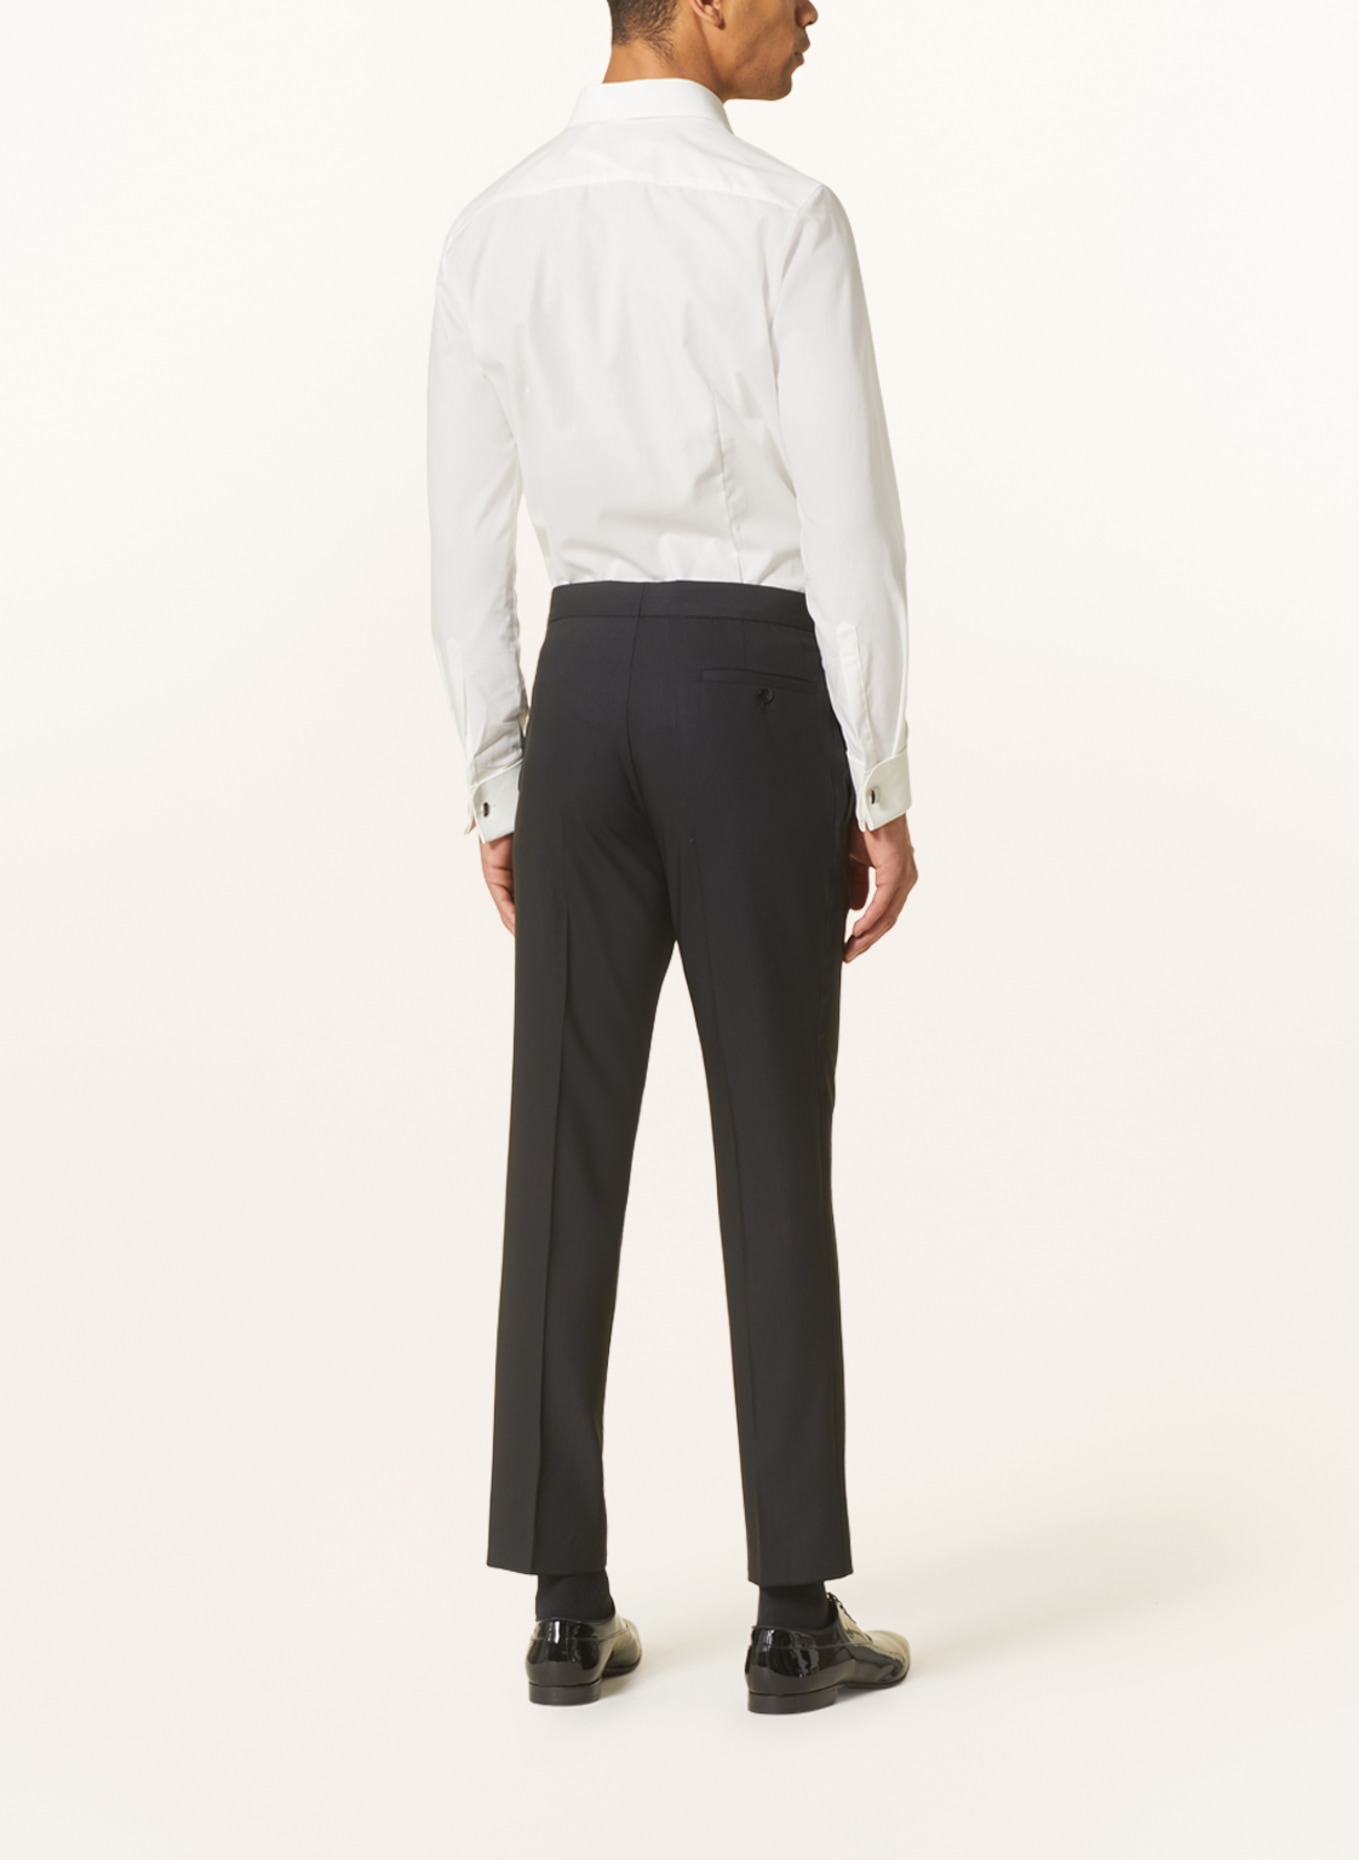 WILVORST Suit trousers slim fit, Color: BLACK (Image 4)